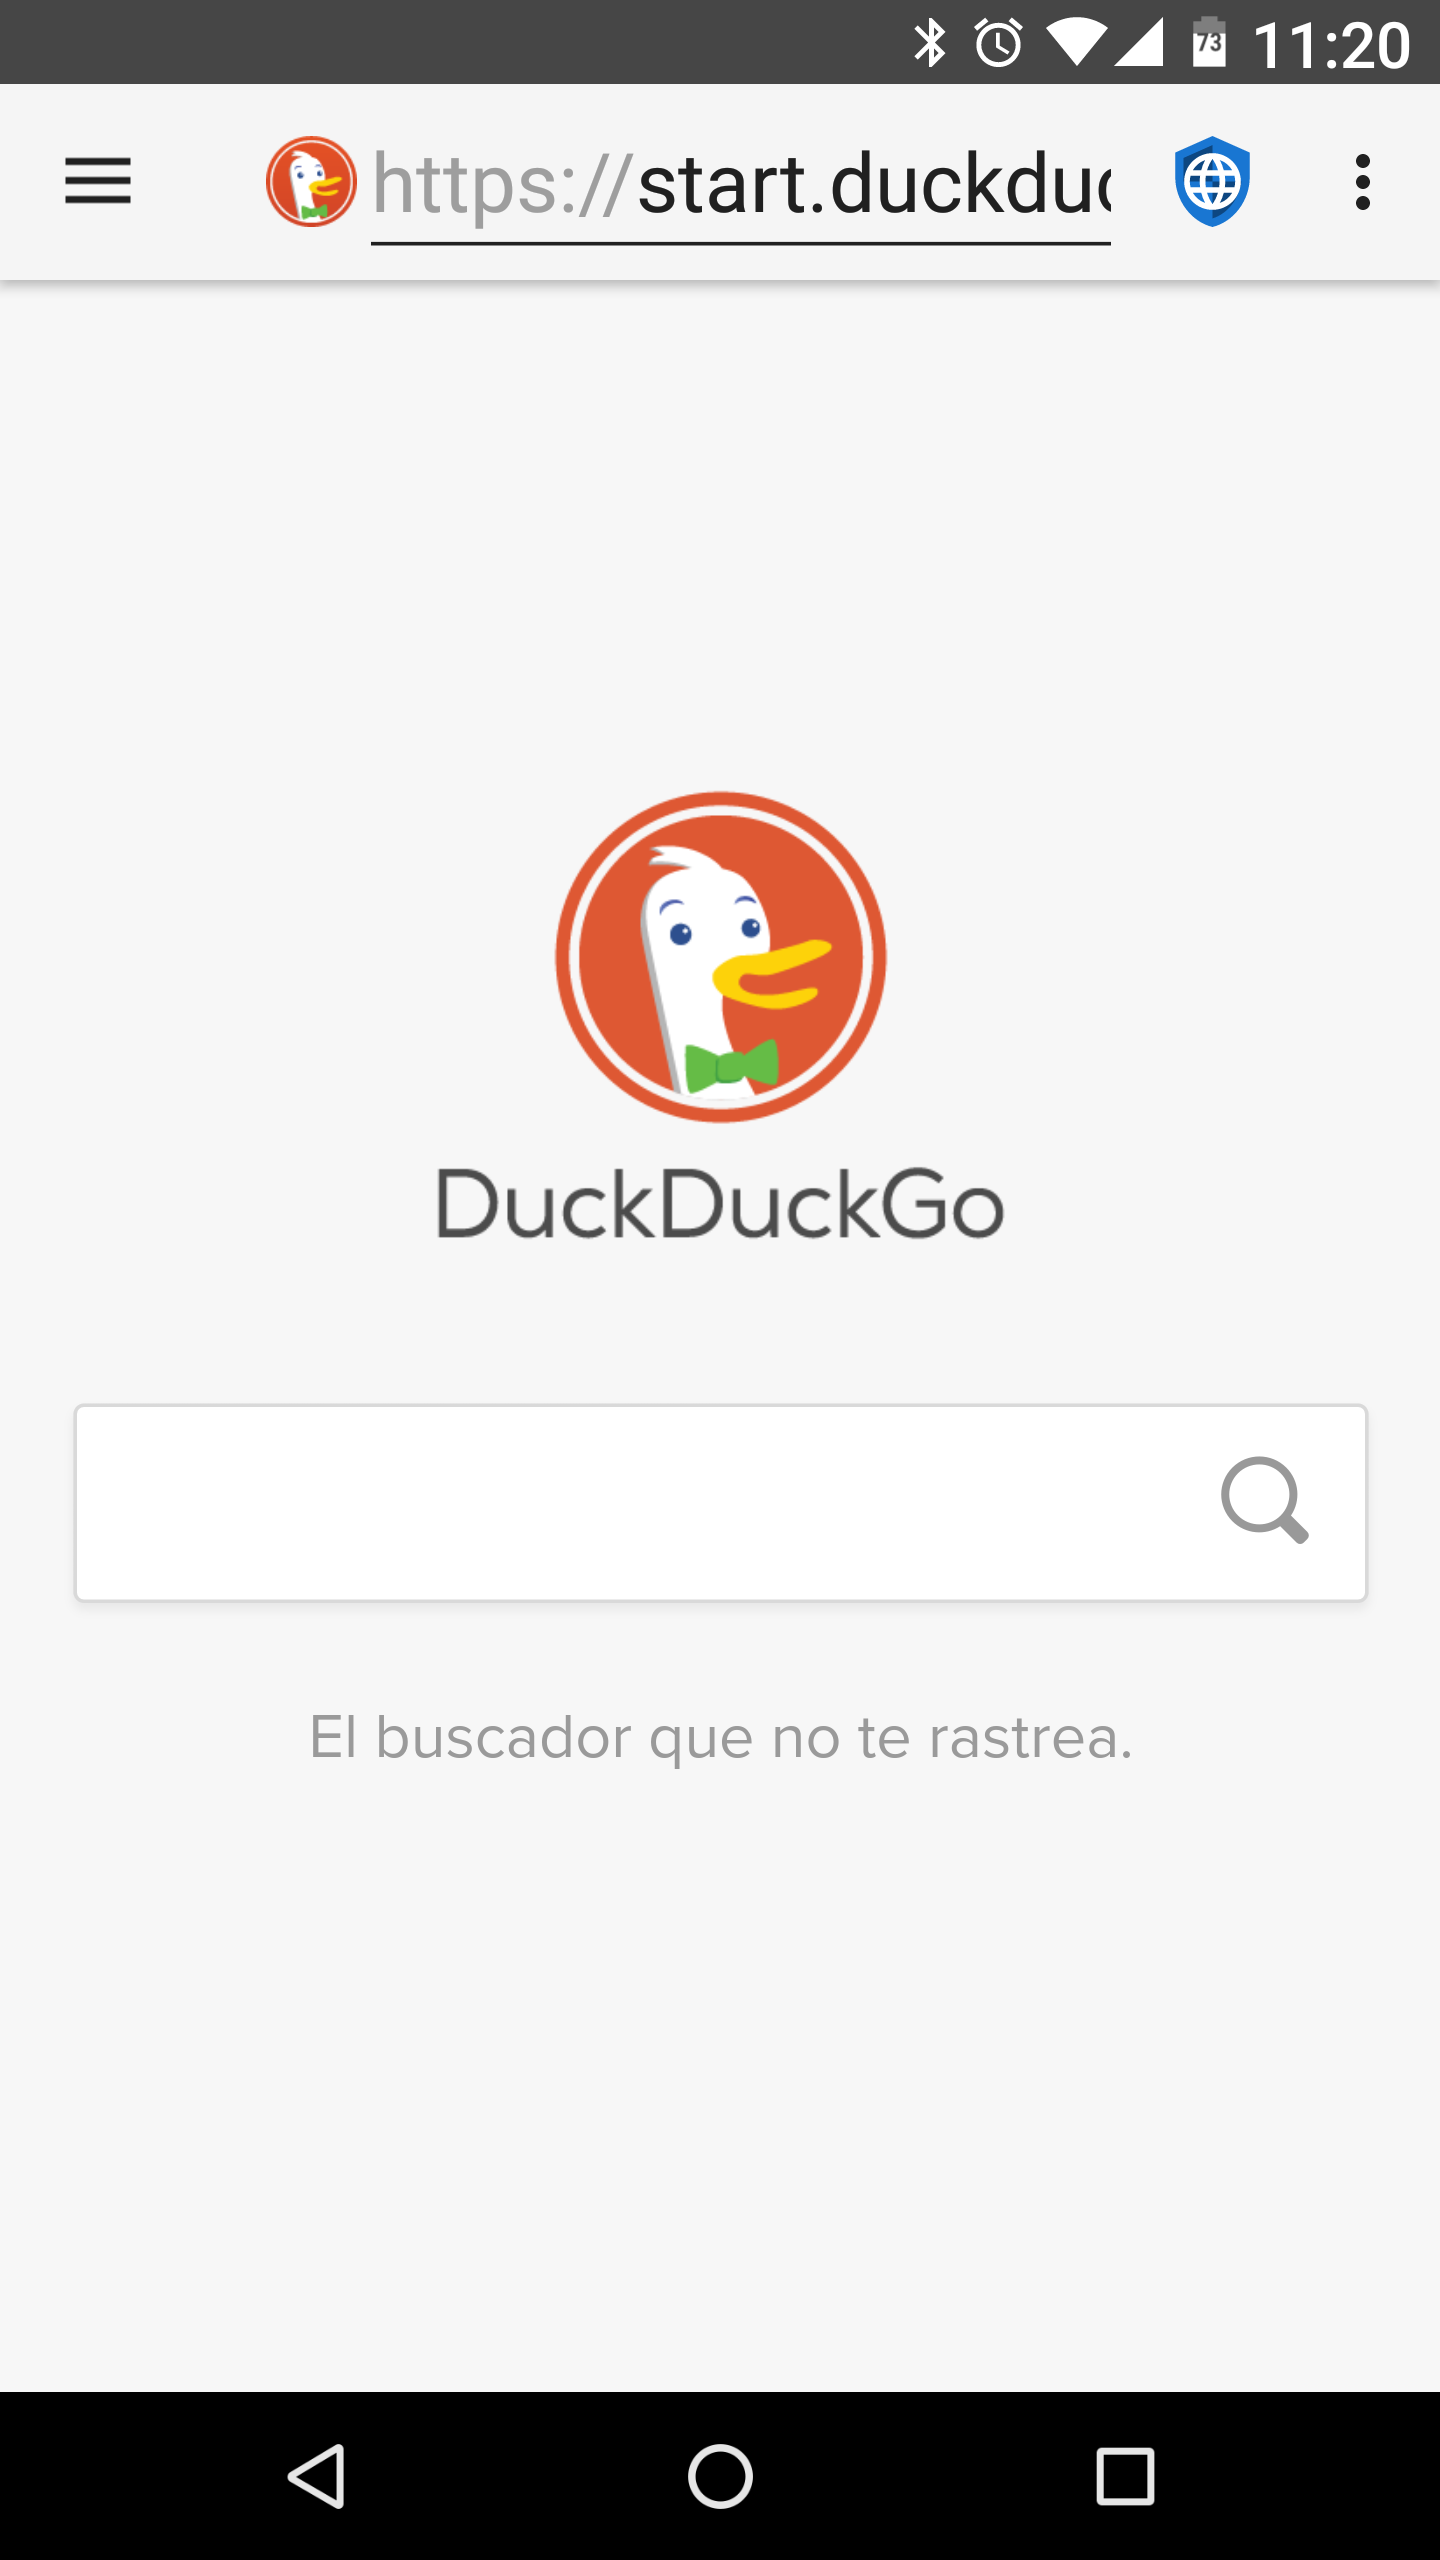 fastlane/metadata/android/es/phoneScreenshots/01-DuckDuckGo.png